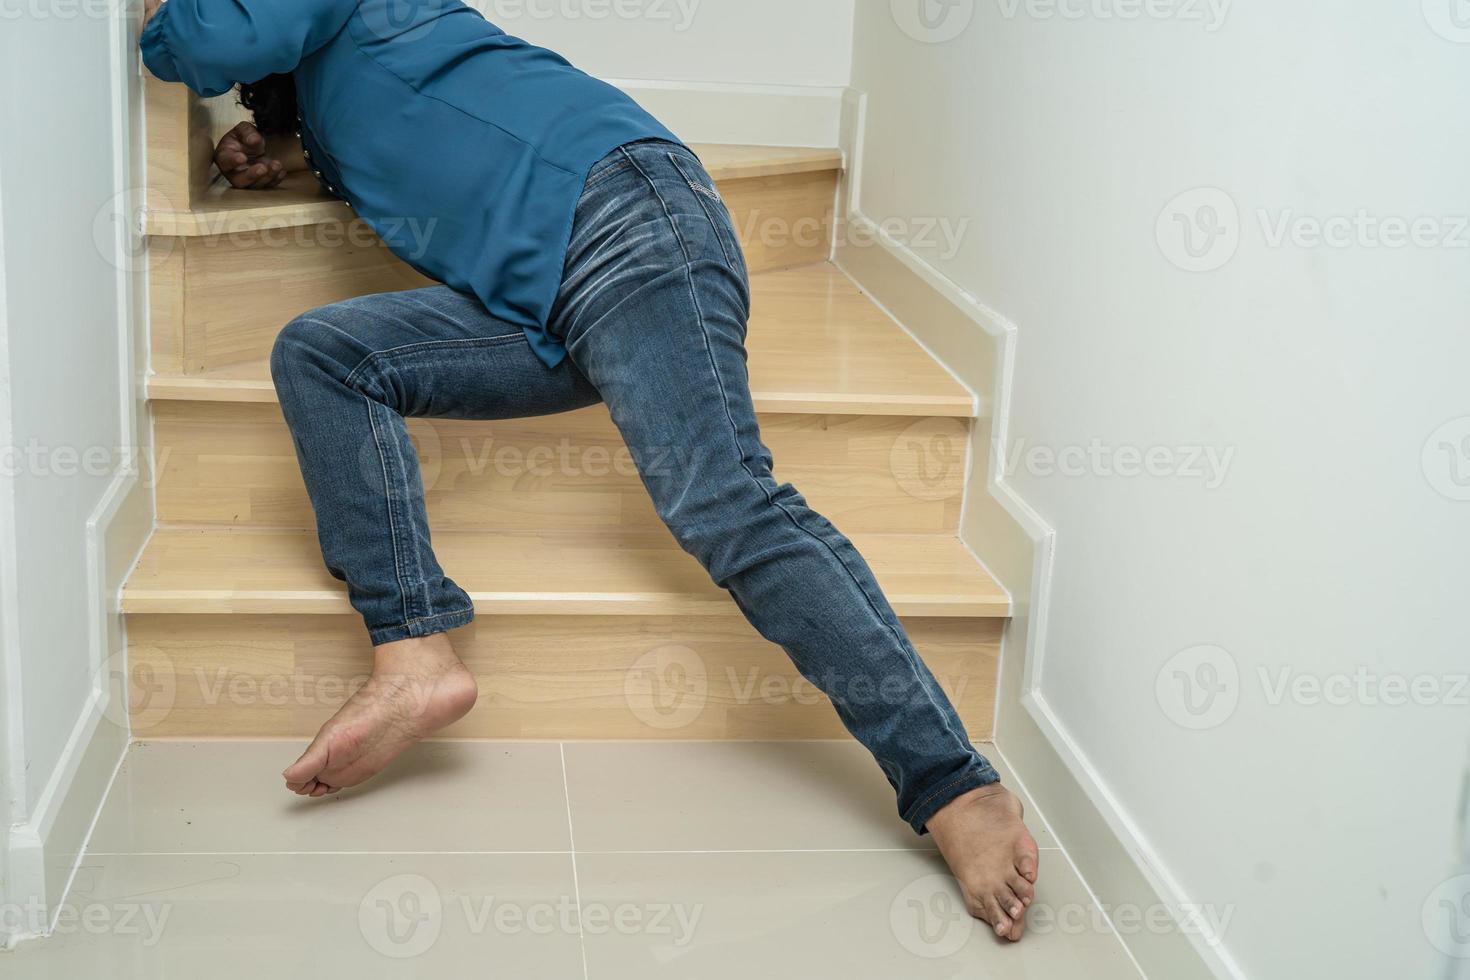 femme asiatique patiente tomber dans les escaliers parce que les surfaces glissantes photo